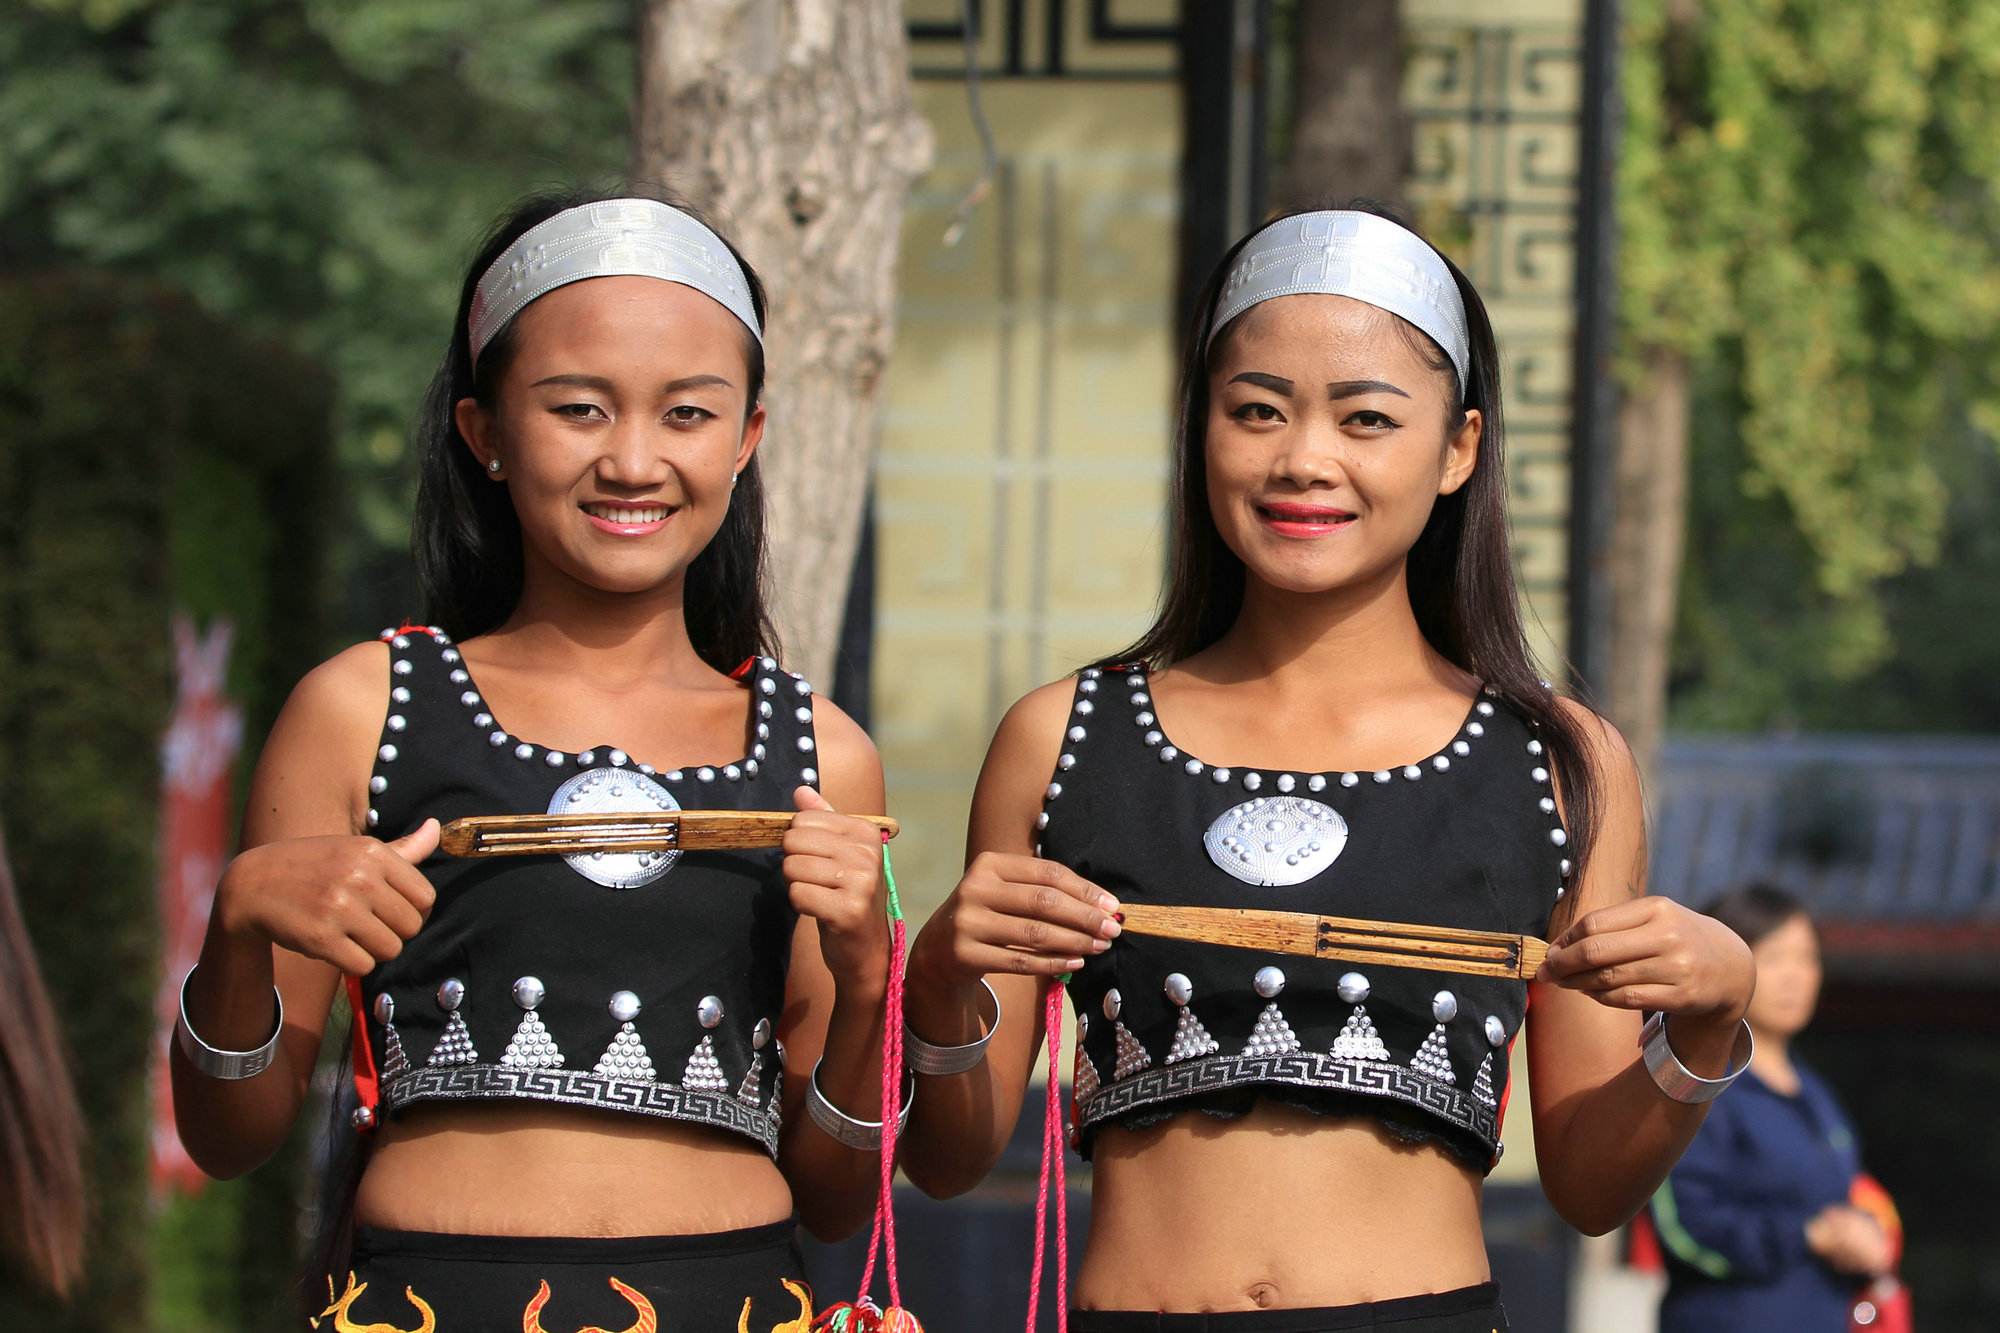 新款傣族女子群舞舞台舞蹈选什么牌子好 同款好推荐